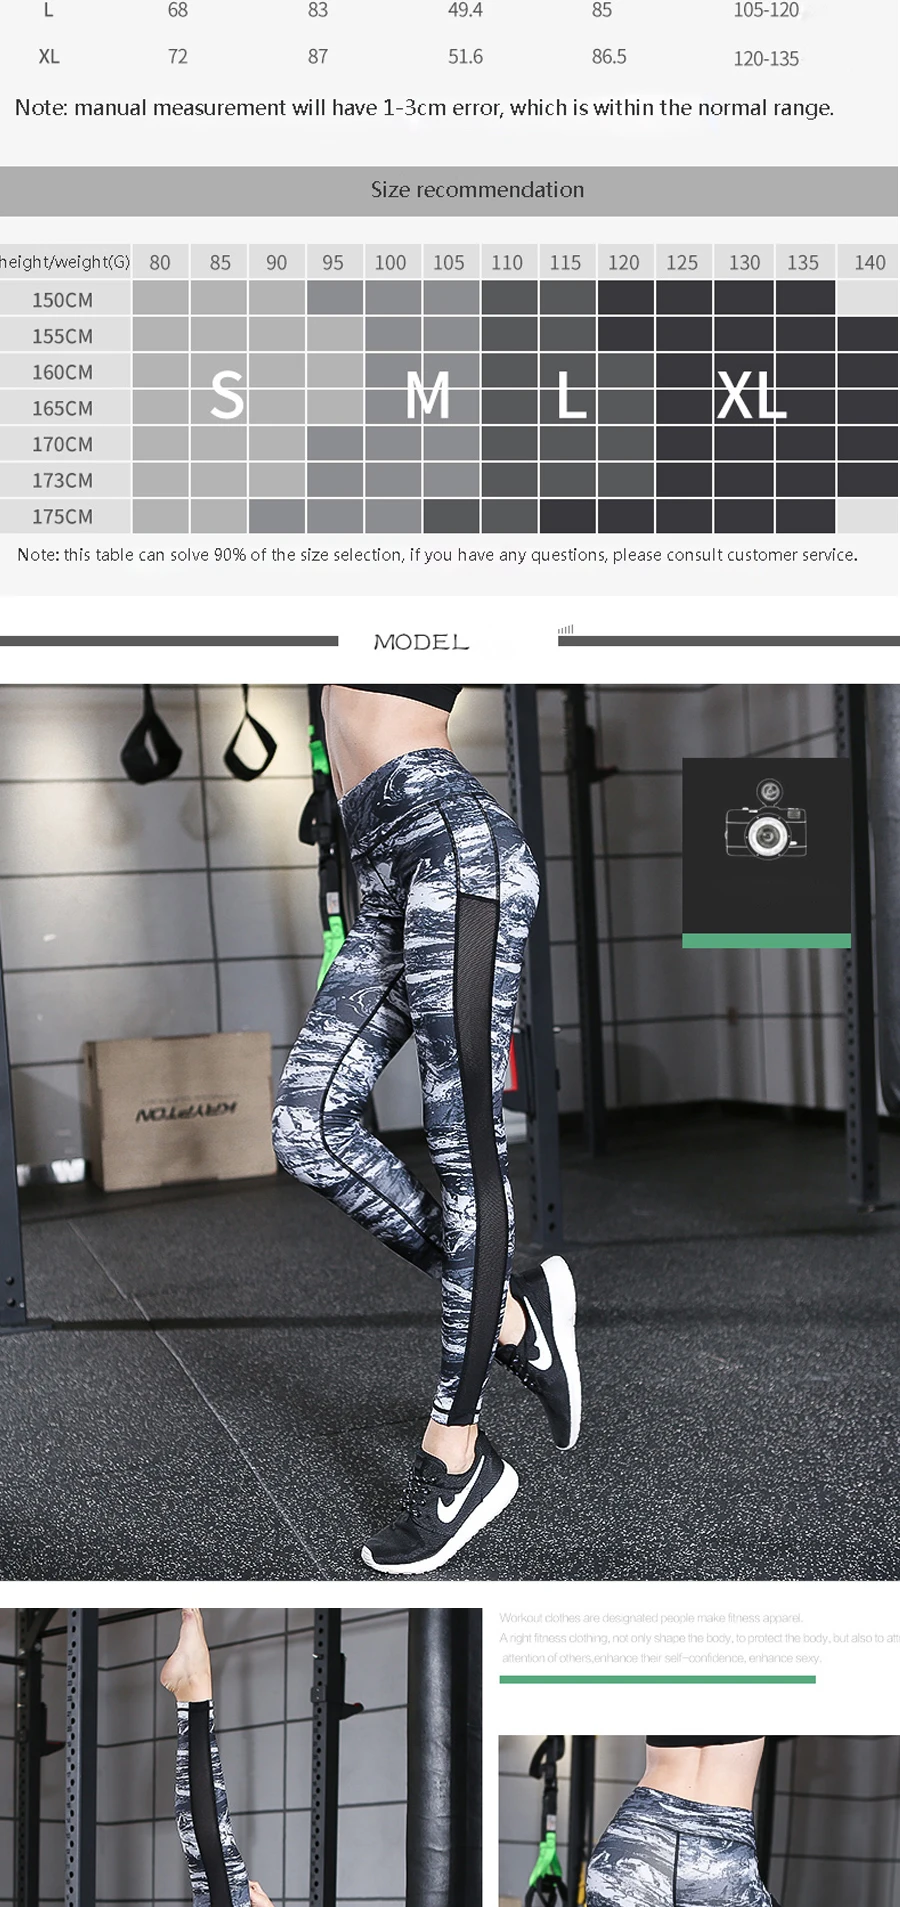 Женские Бесшовные штаны для йоги с высокой талией и цветным принтом, уникальные леггинсы для фитнеса, тренировок, занятий спортом, бега, сексуальные штаны с эффектом пуш-ап